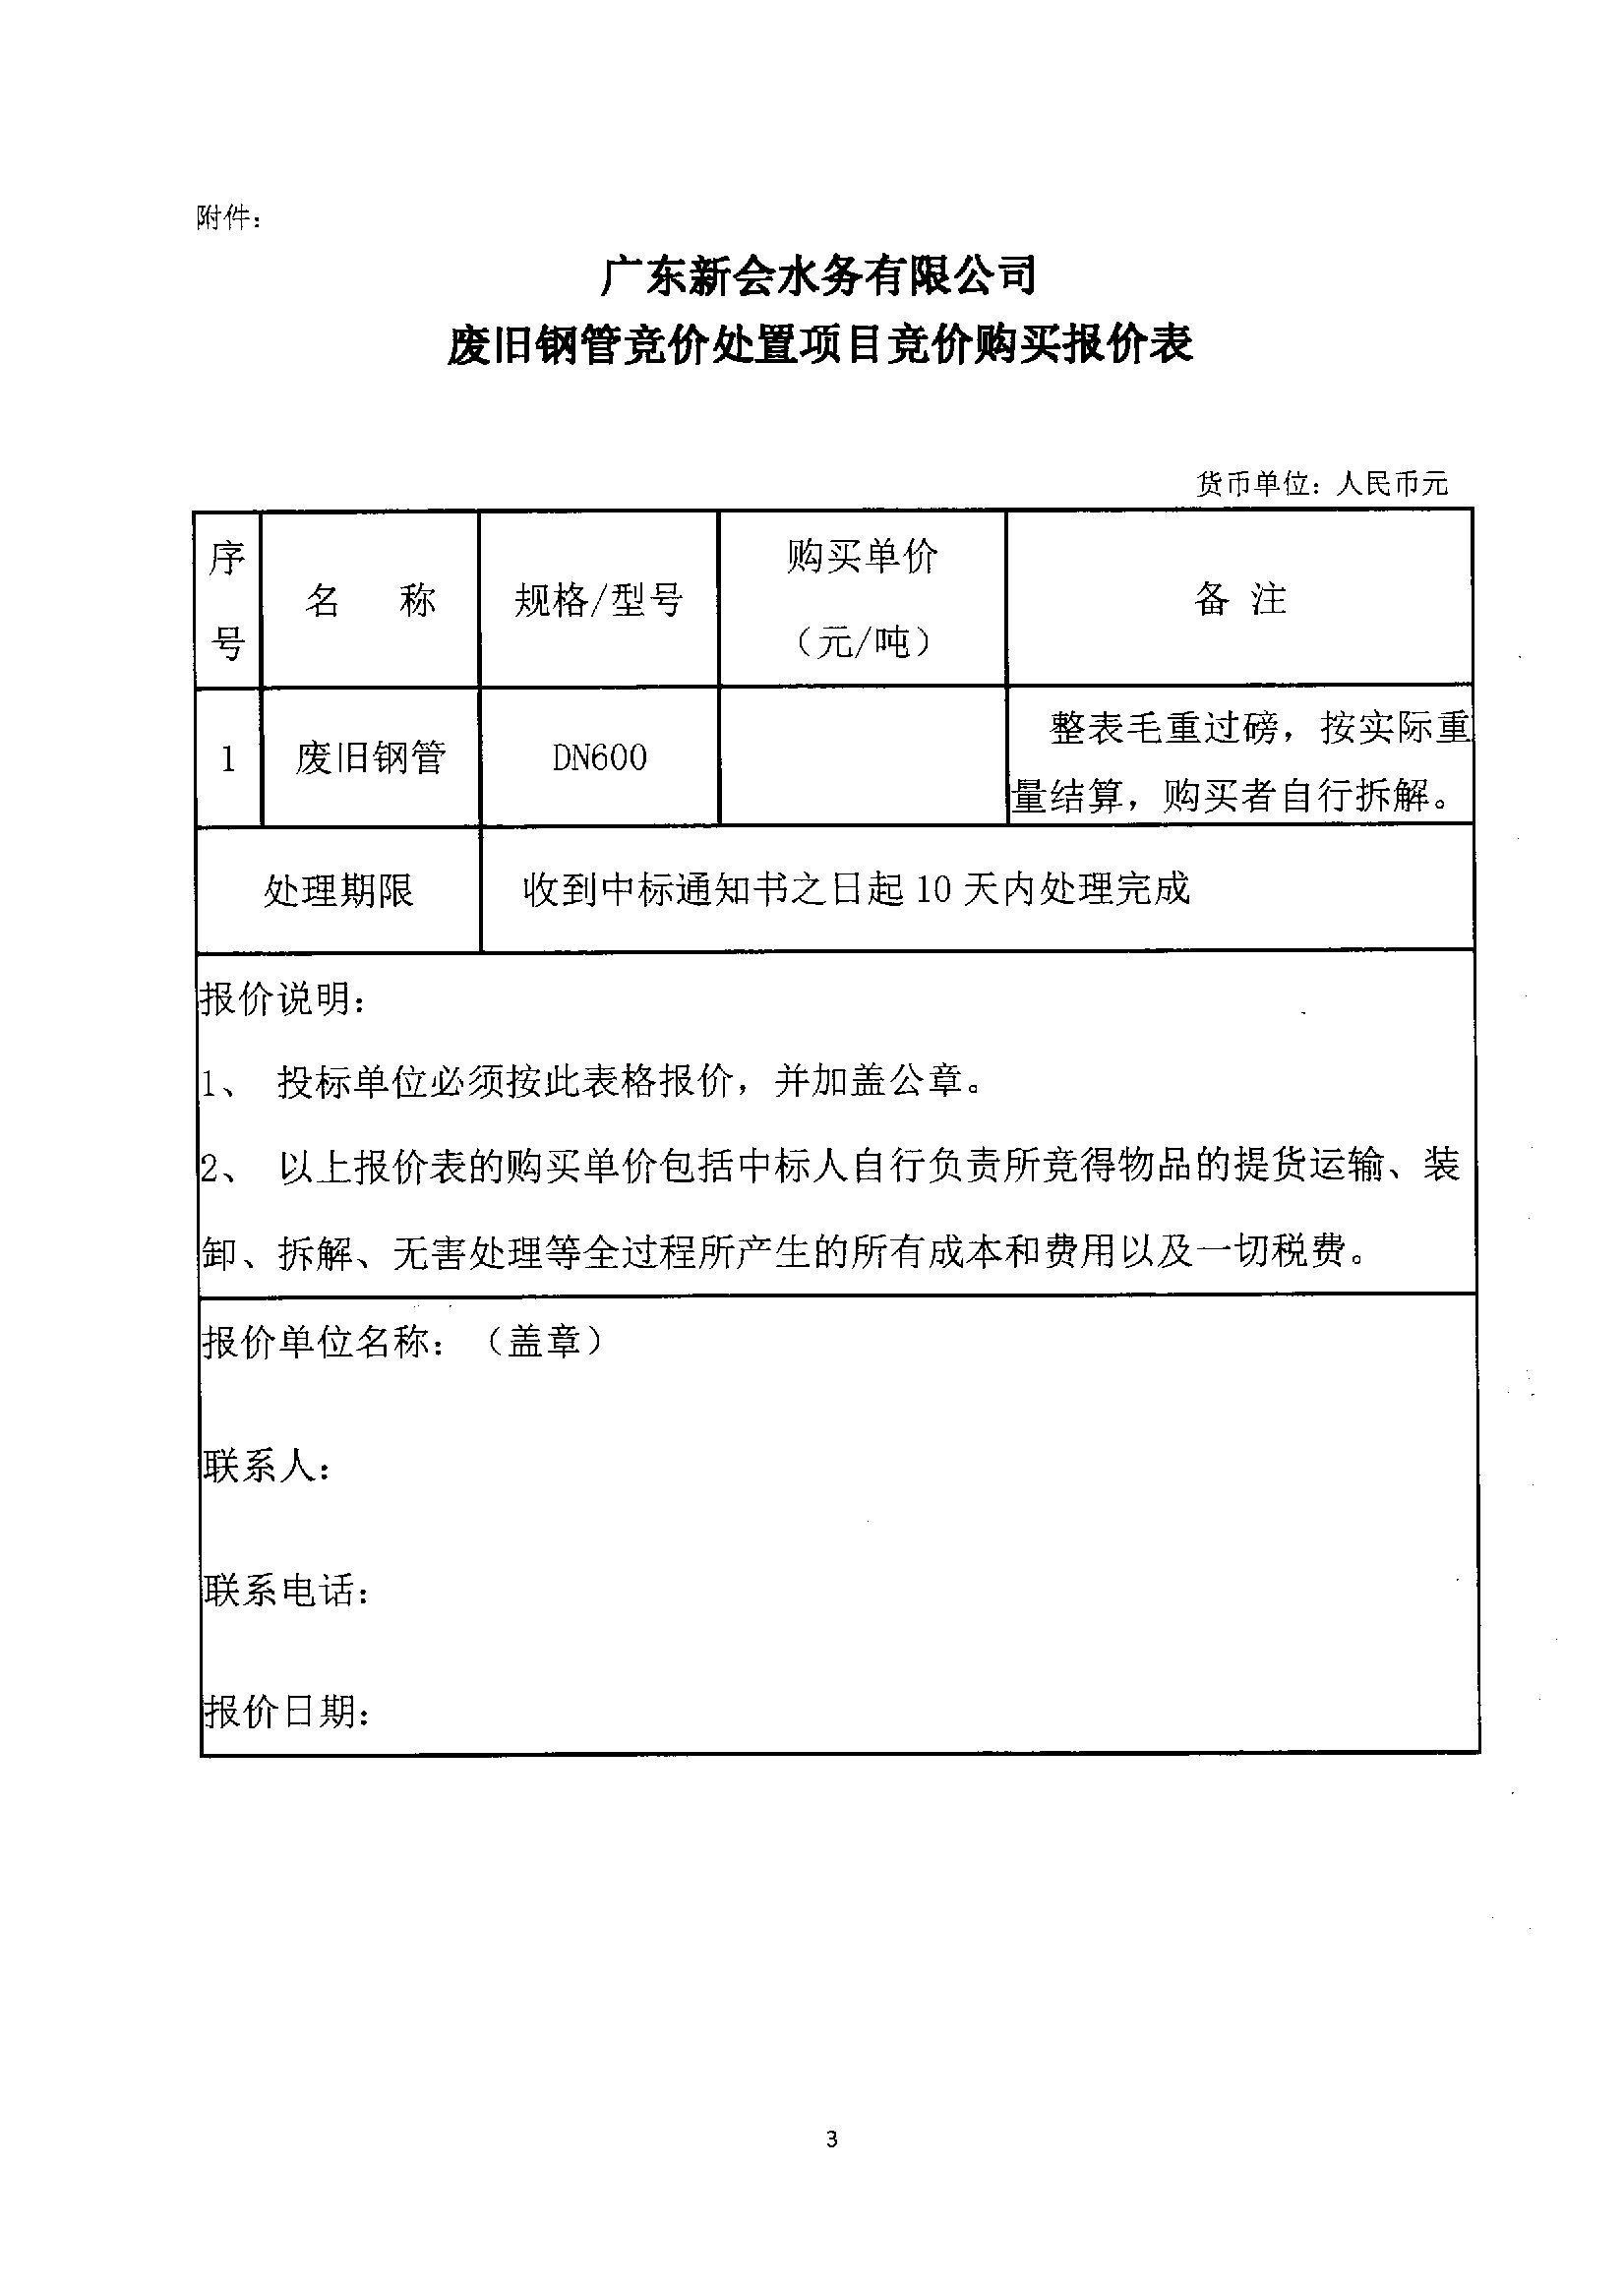 广东新会水务有限公司废旧钢管竞价处置公告图3.jpg